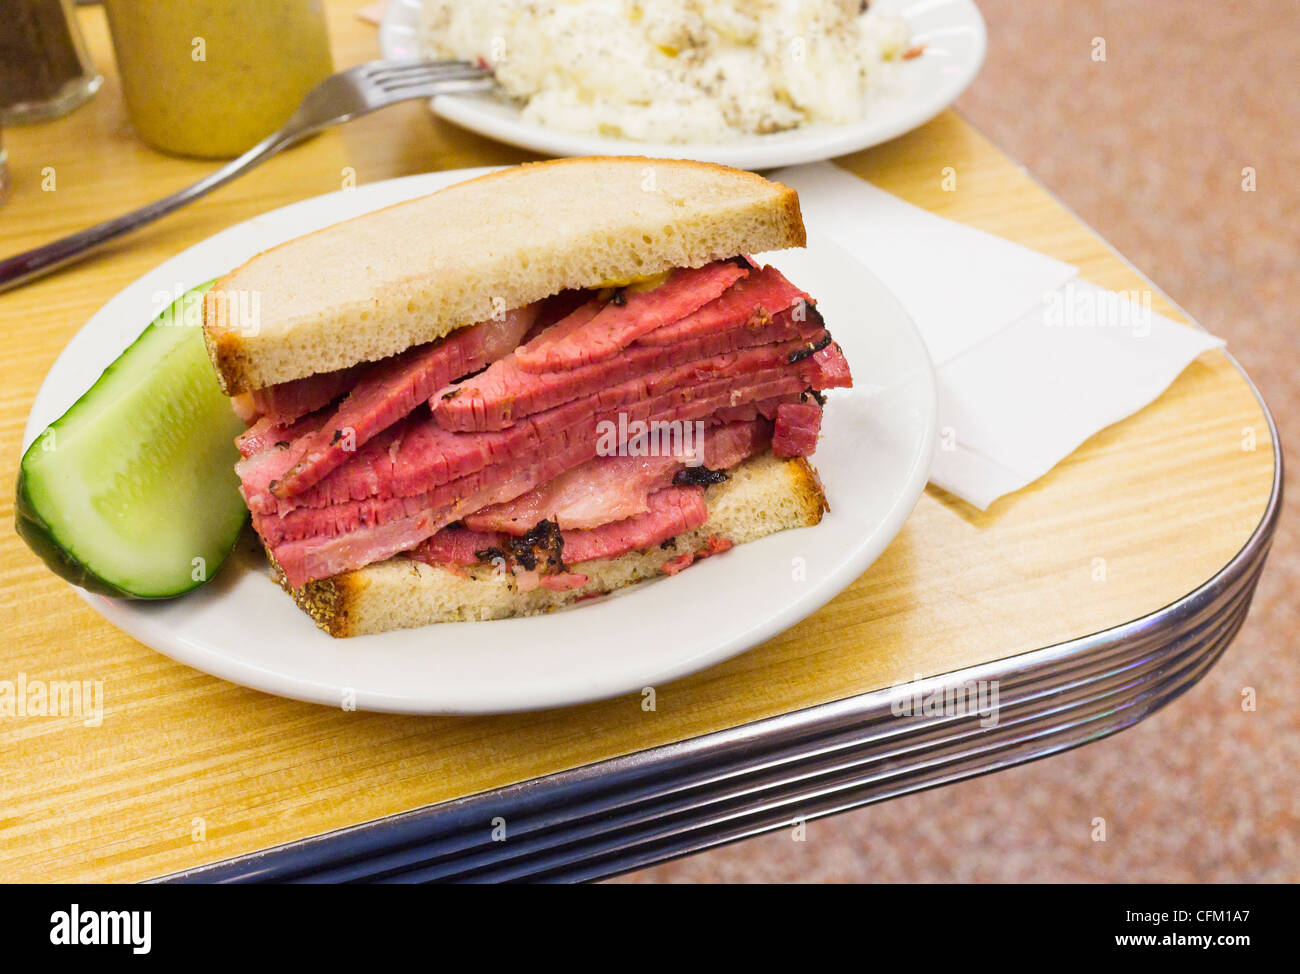 USA, l'État de New York, New York City, sandwich au pastrami Banque D'Images